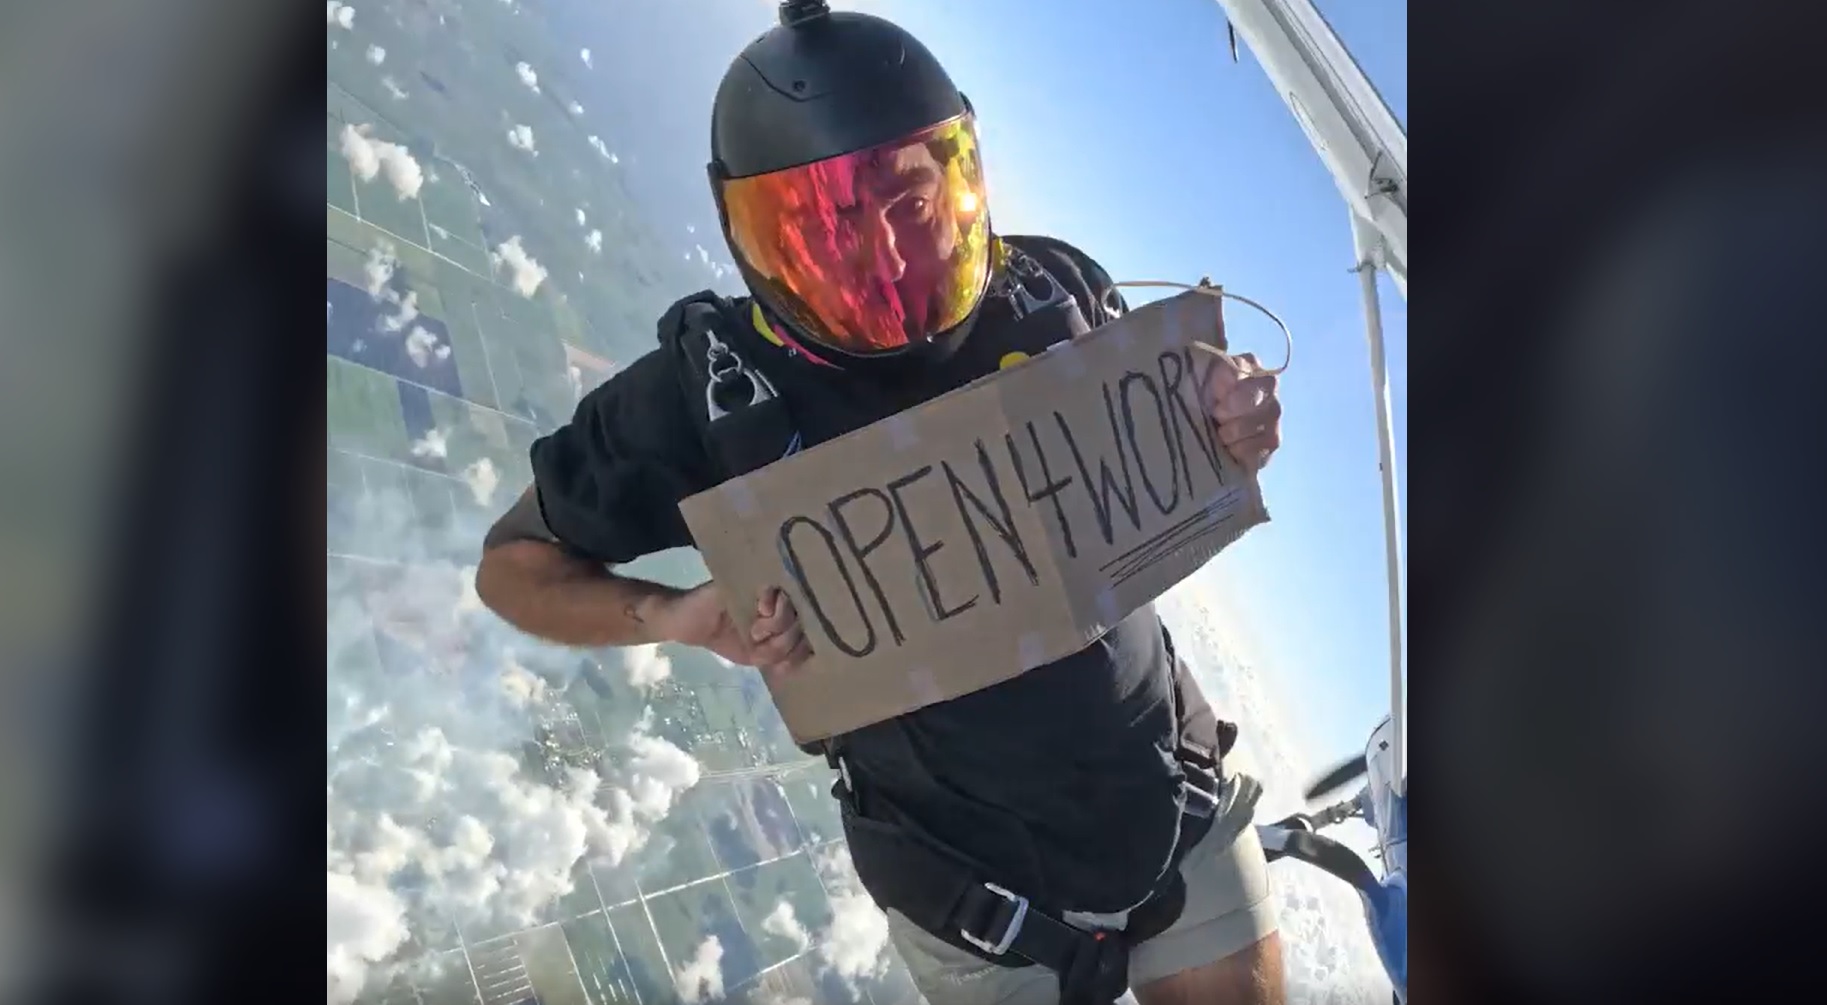 Homem pula de paraquedas para conseguir emprego dos sonhos; veja vídeo